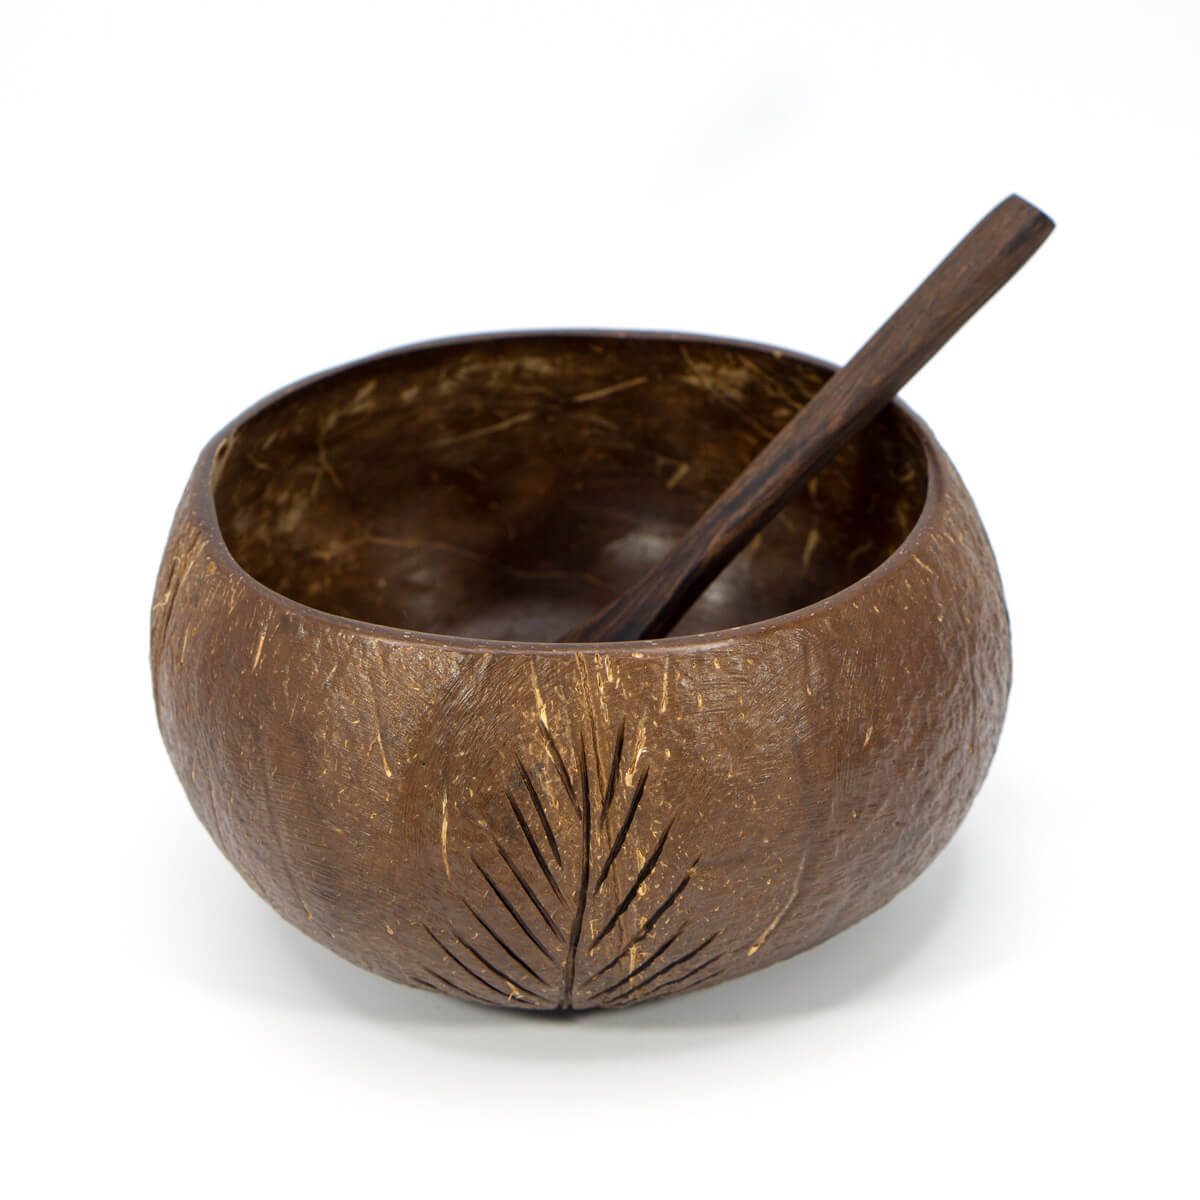 Kokosnuss Bowl mit Schnitzmuster in Blätteroptik von Io Nova